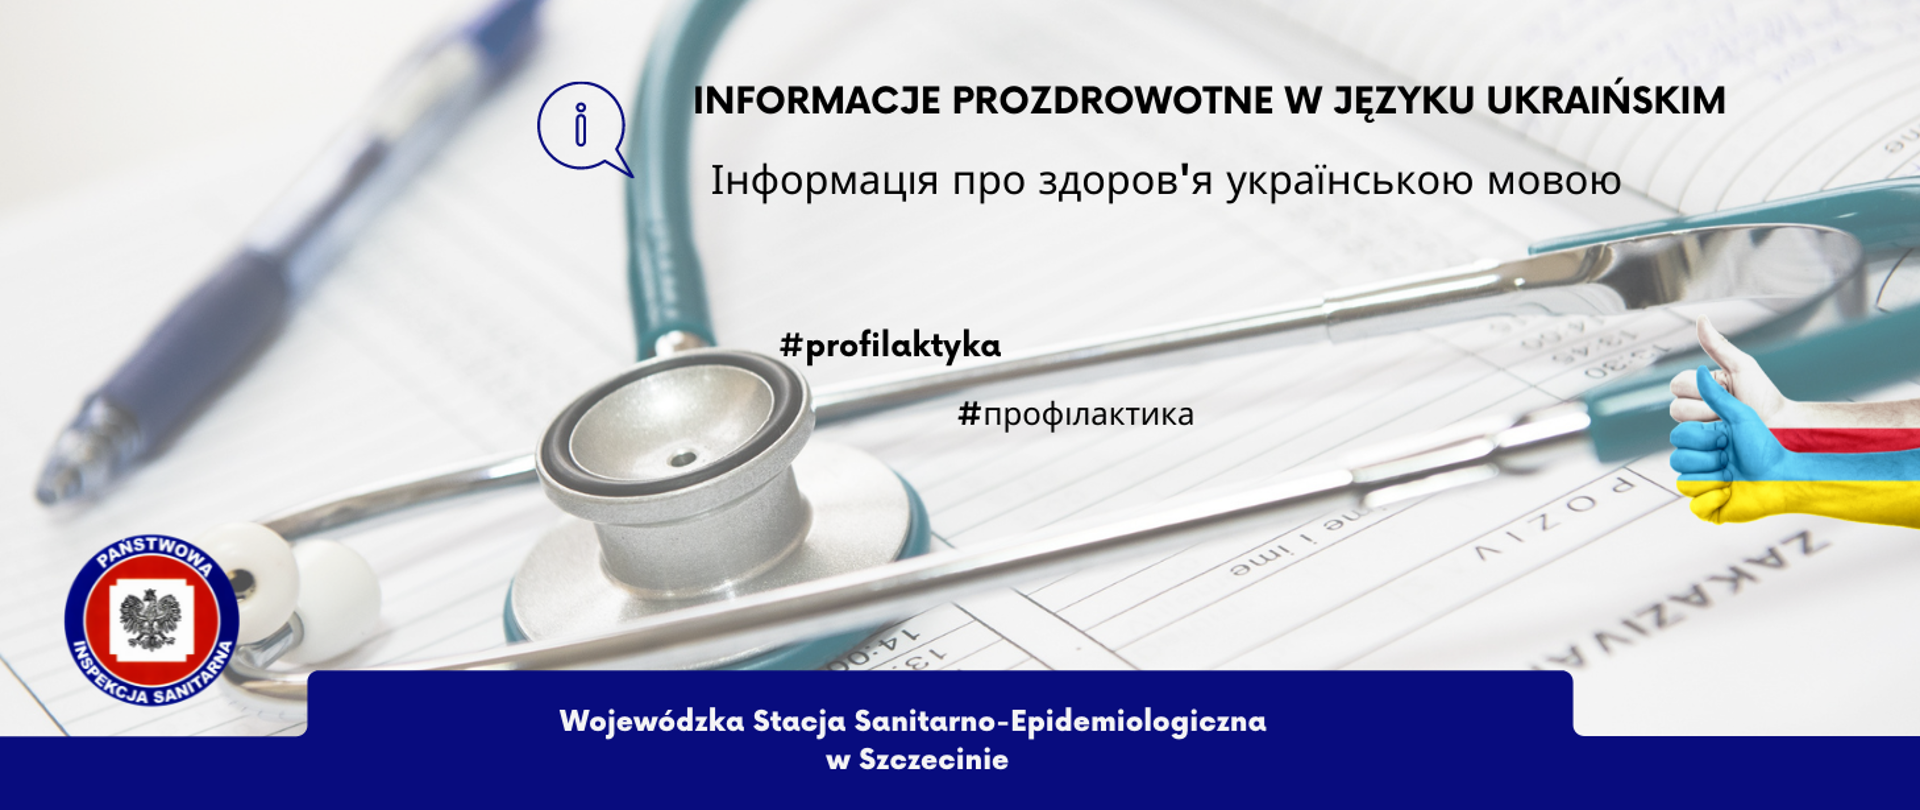 Na obrazku znajduje się stetoskop oraz napis "Informacje prozdrowotne w języku ukraińskim. #profilaktyka"